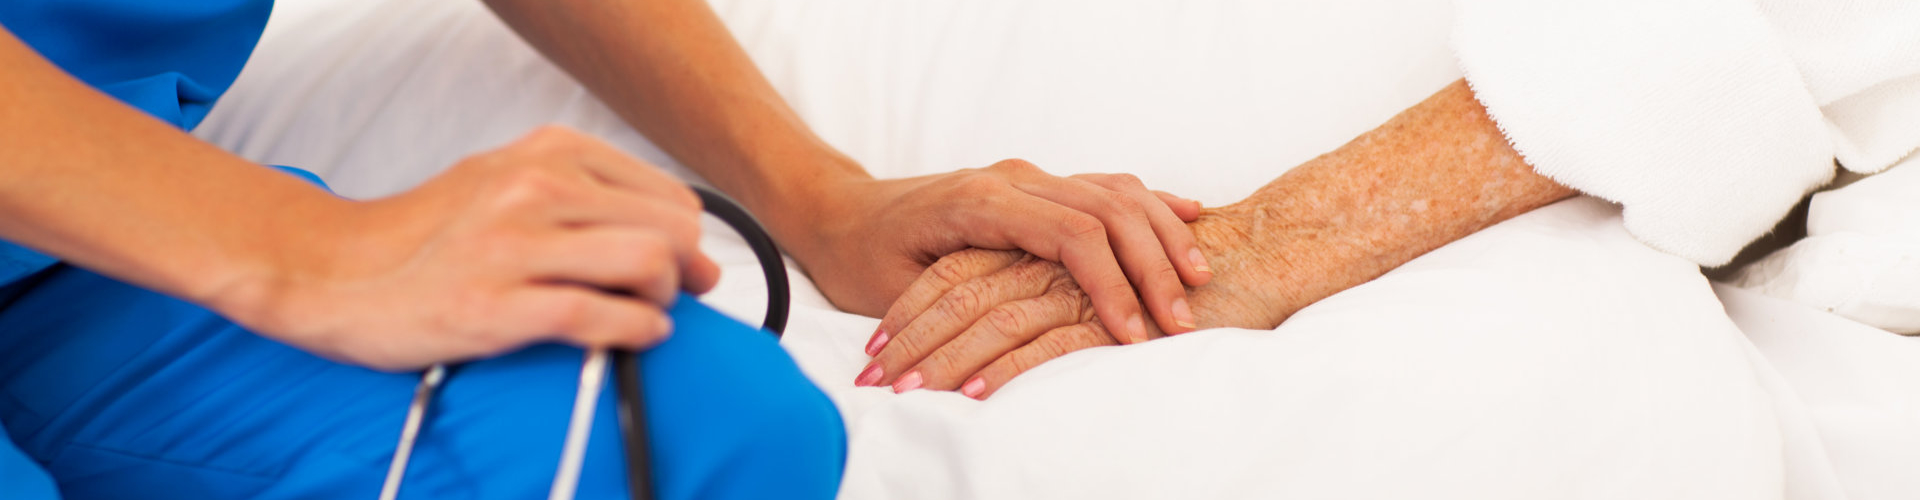 nurse holding senior patient's hands